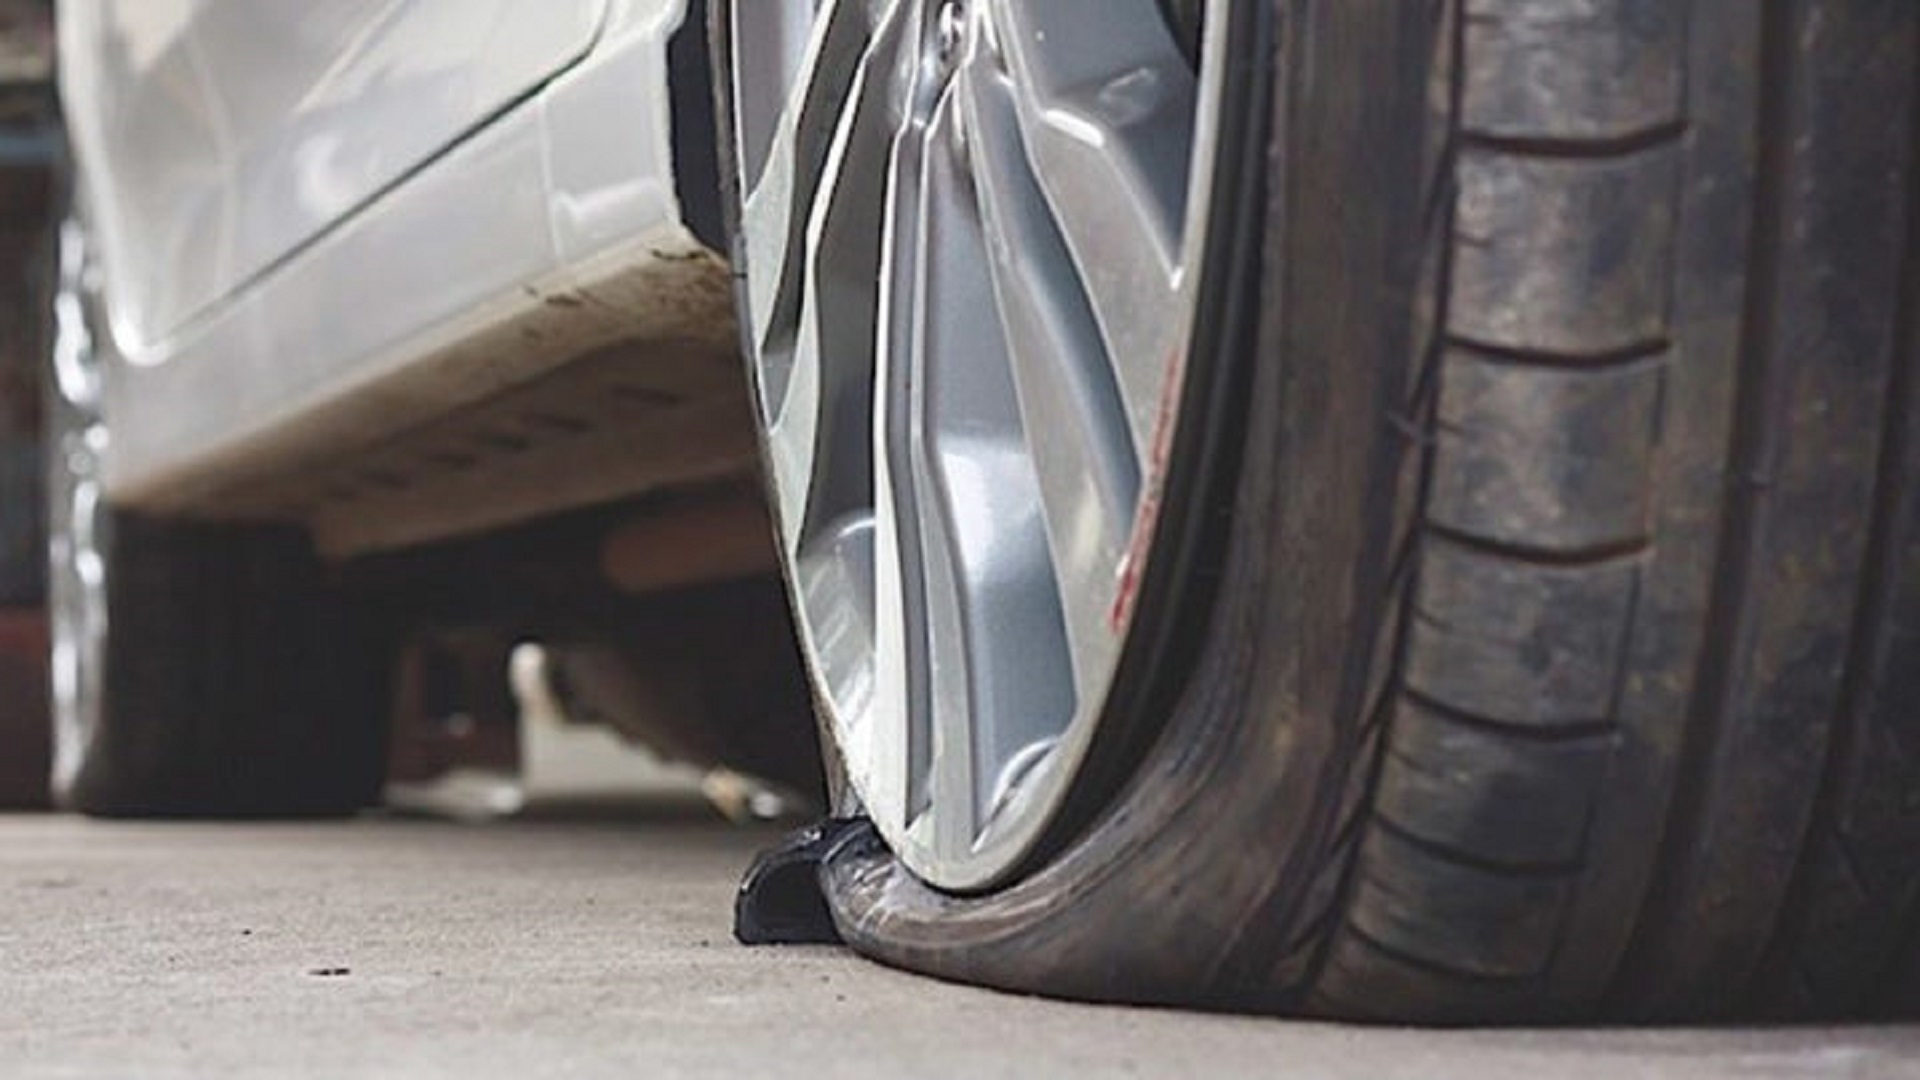 Squarciato uno dei quattro pneumatici dell’auto del vice sindaco di Castelvetrano: indagini in corso